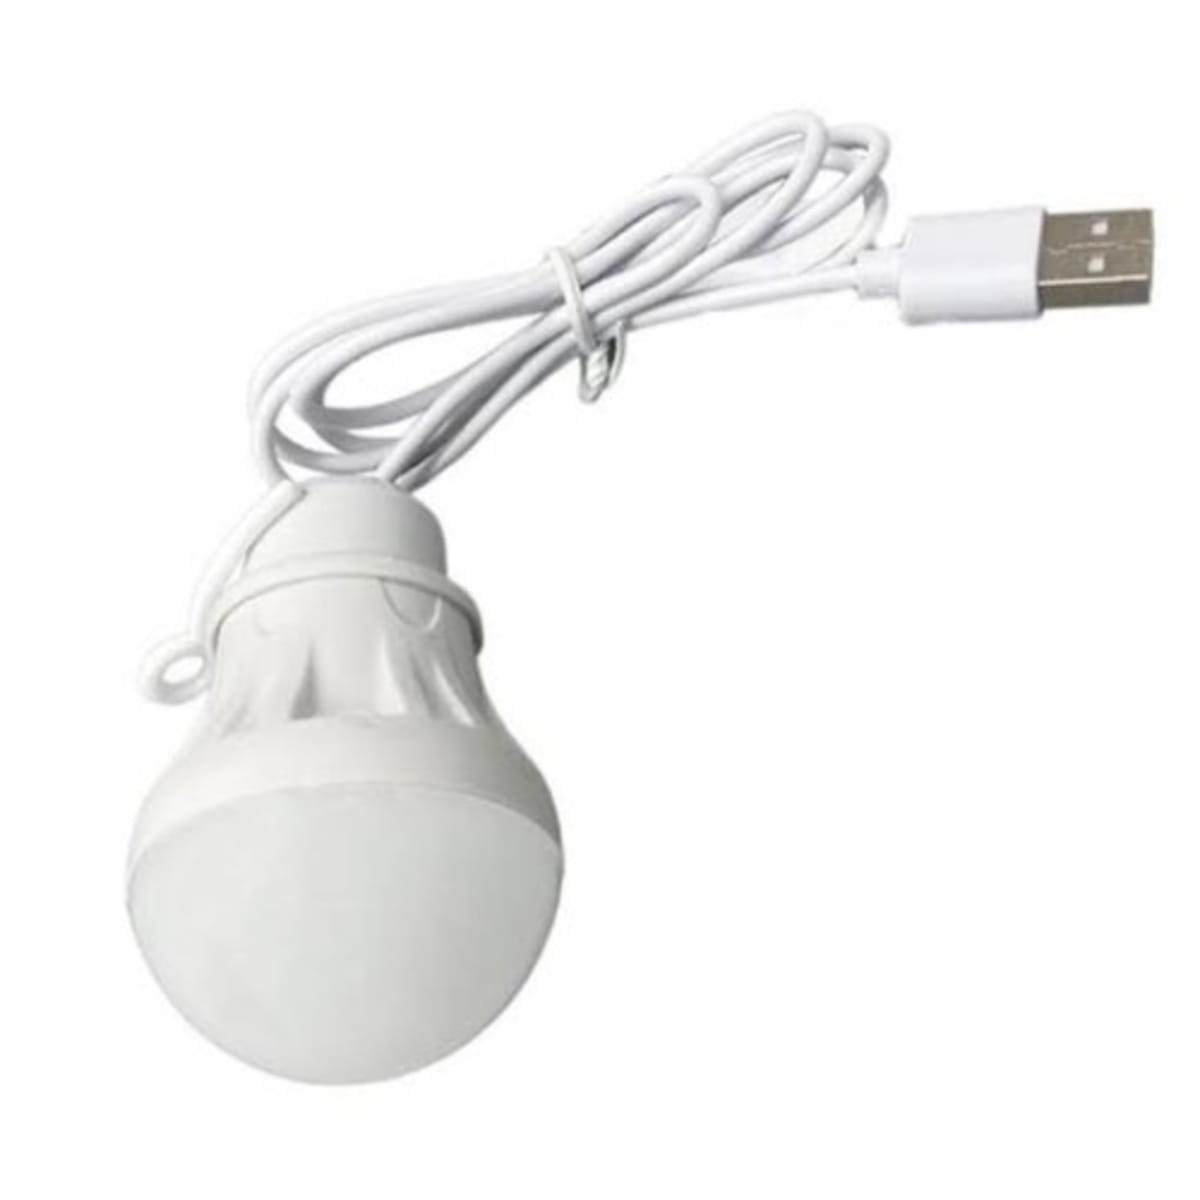 Usb Led Light Bulb - 5w